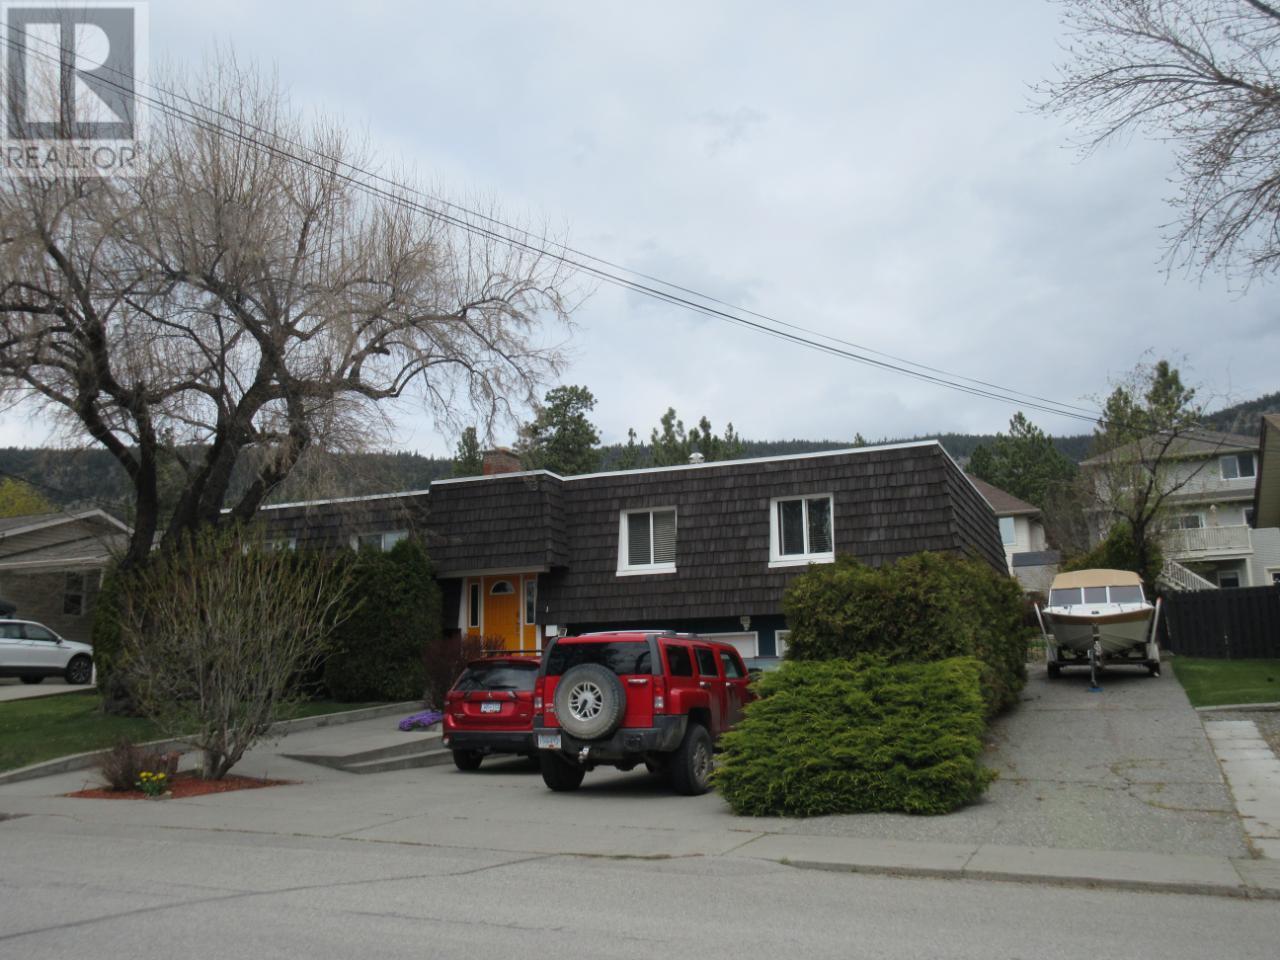 












2401 REID AVE

,
Merritt,




British Columbia
V1K1H6

